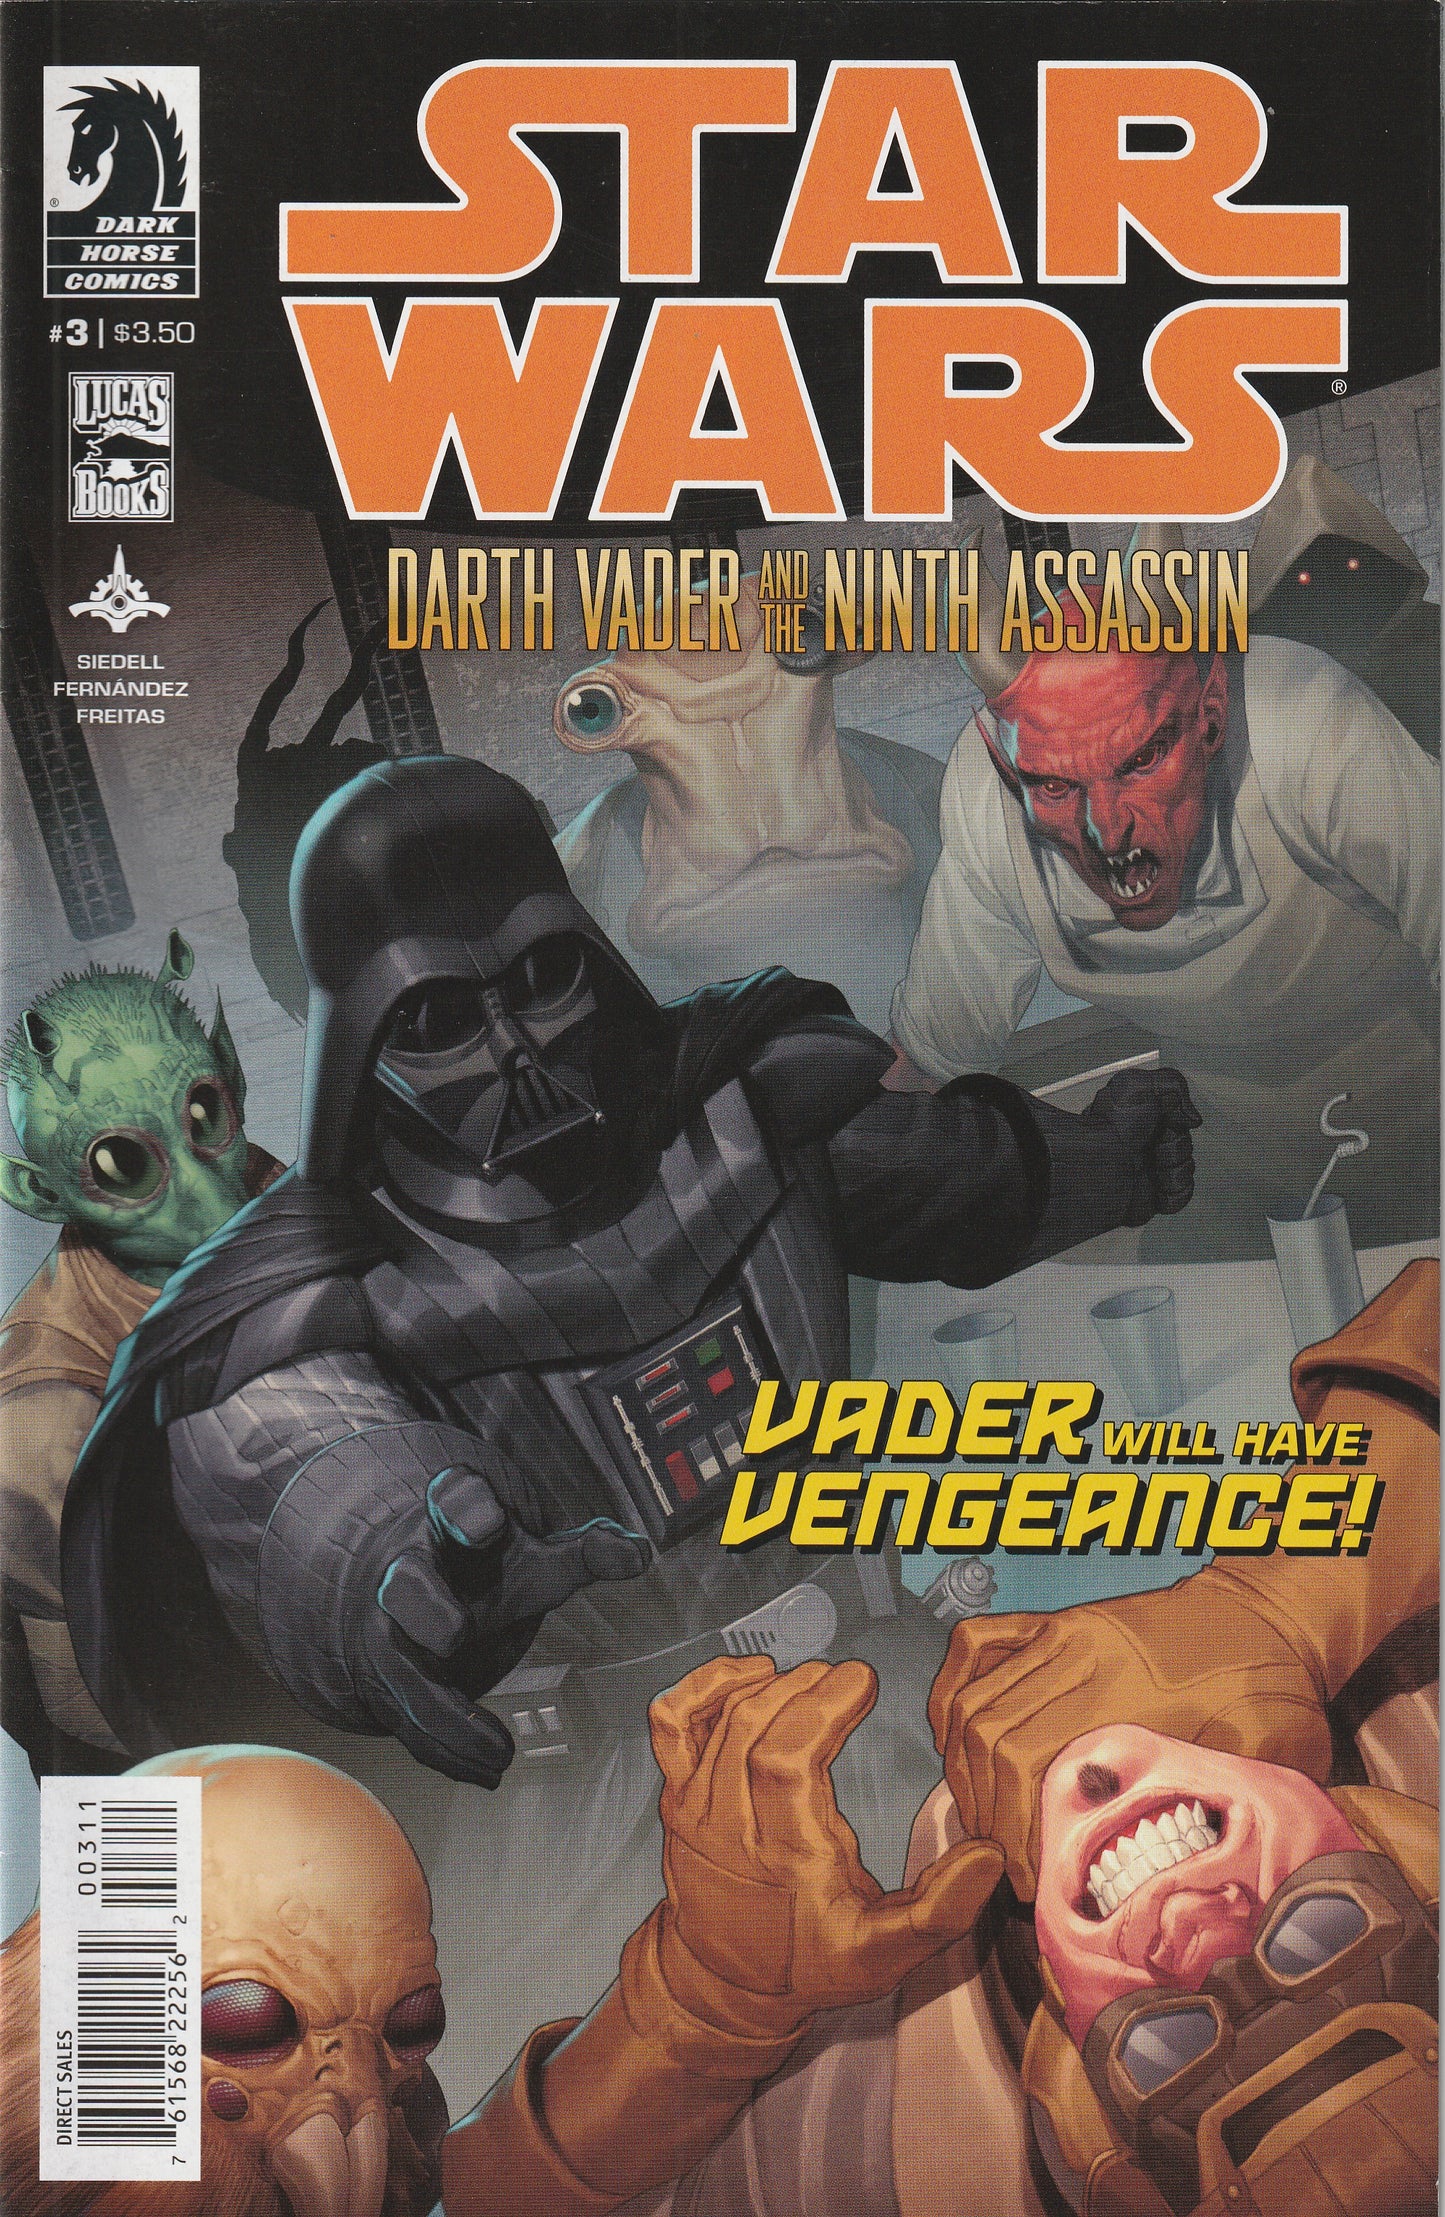 Star Wars: Darth Vader and the Ninth Assassin #3 (2013)